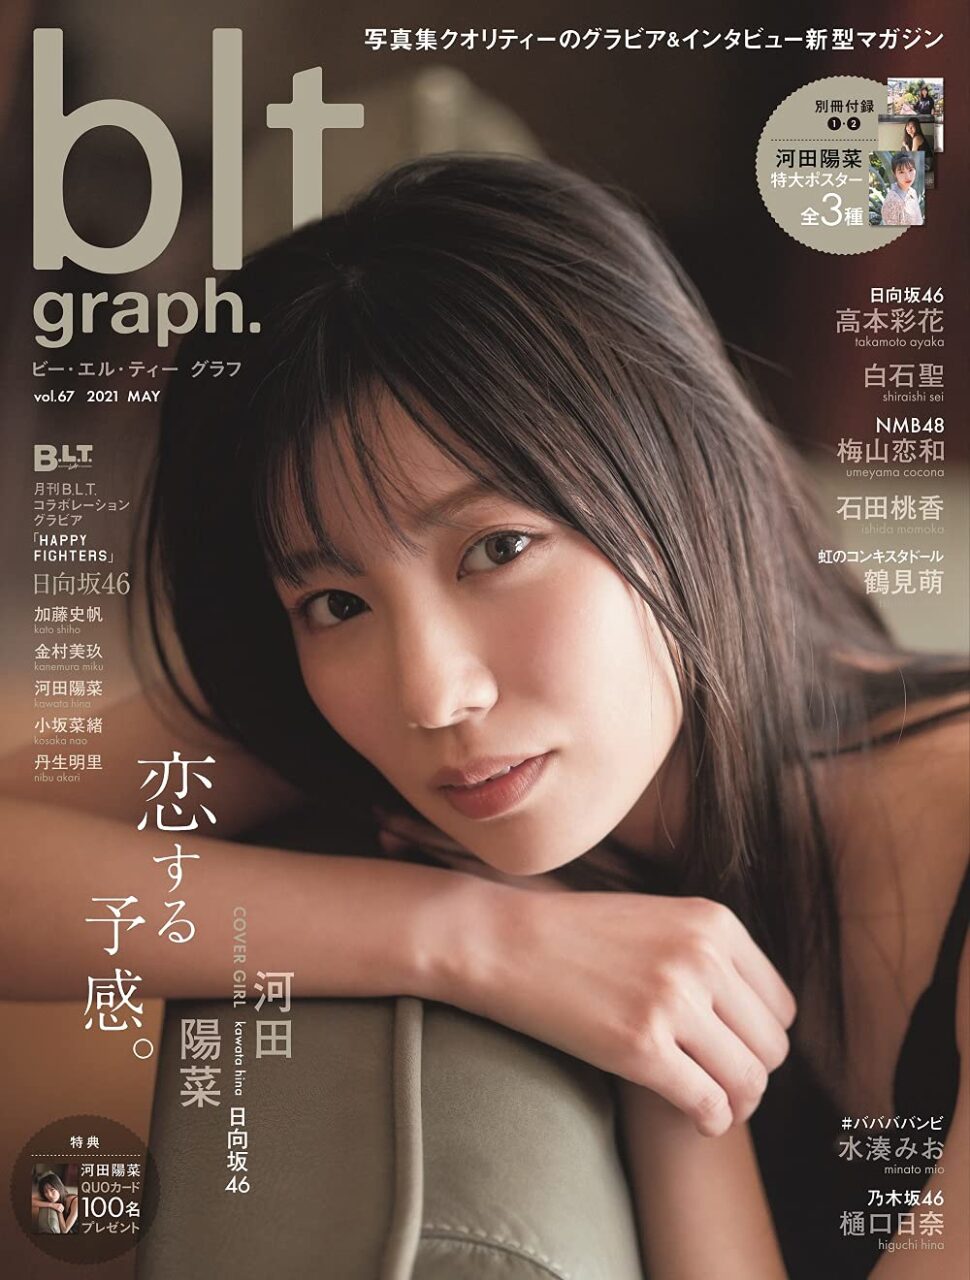 日向坂46 河田陽菜が表紙に登場！「blt graph. vol.67」本日5/19発売！